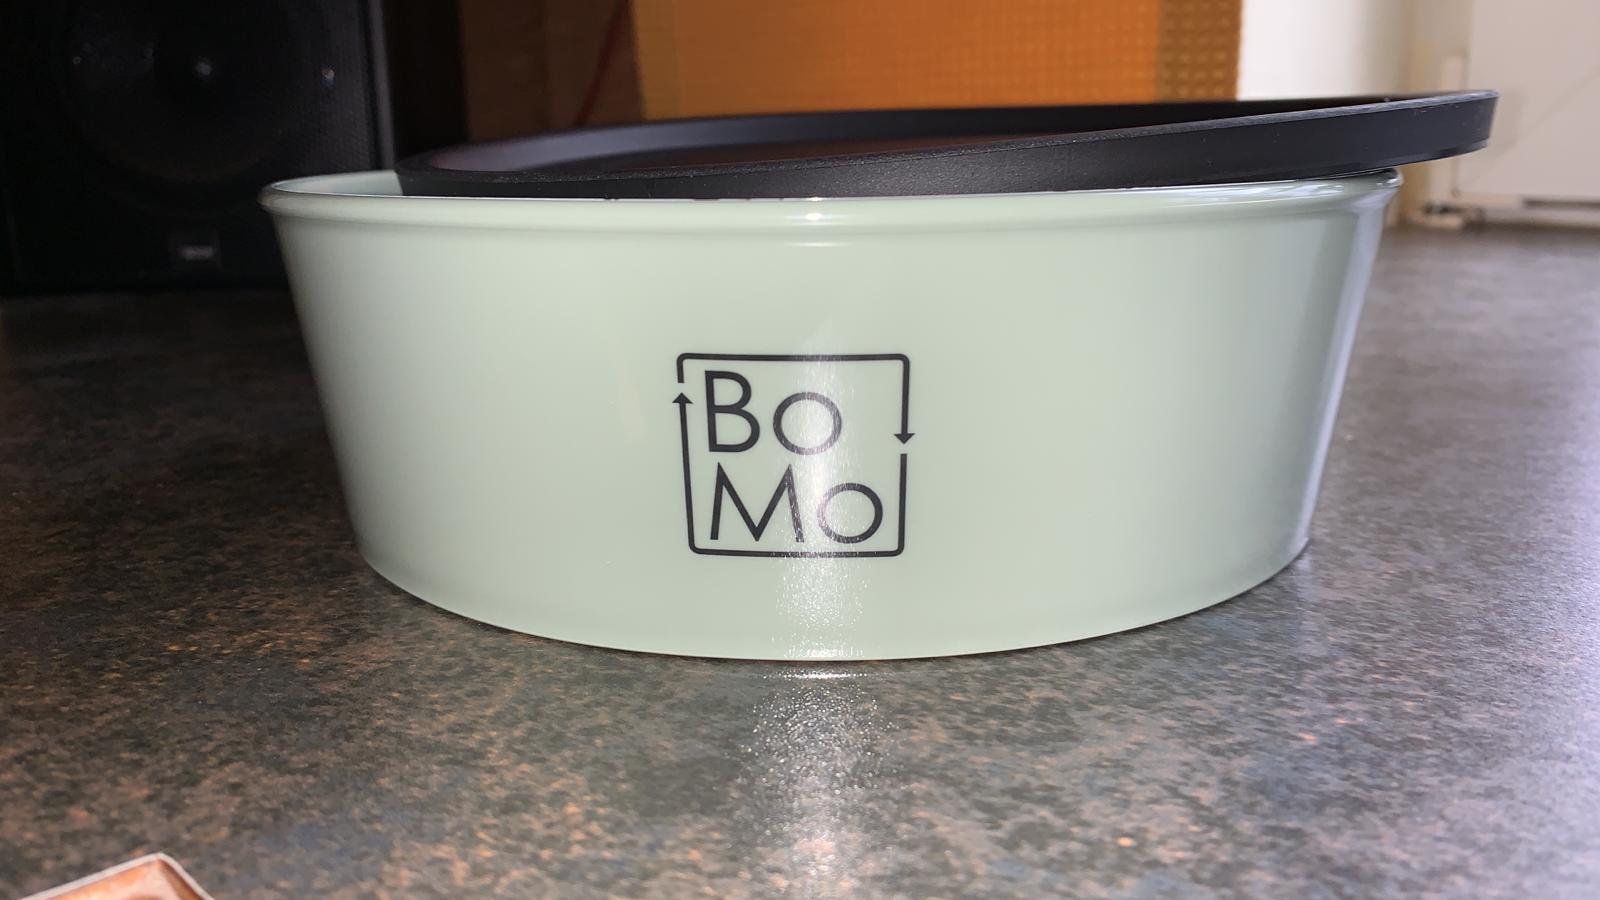 BoMo-Landkreis-Box ab sofort zum kaufen und tauschen in unseren Geschäften